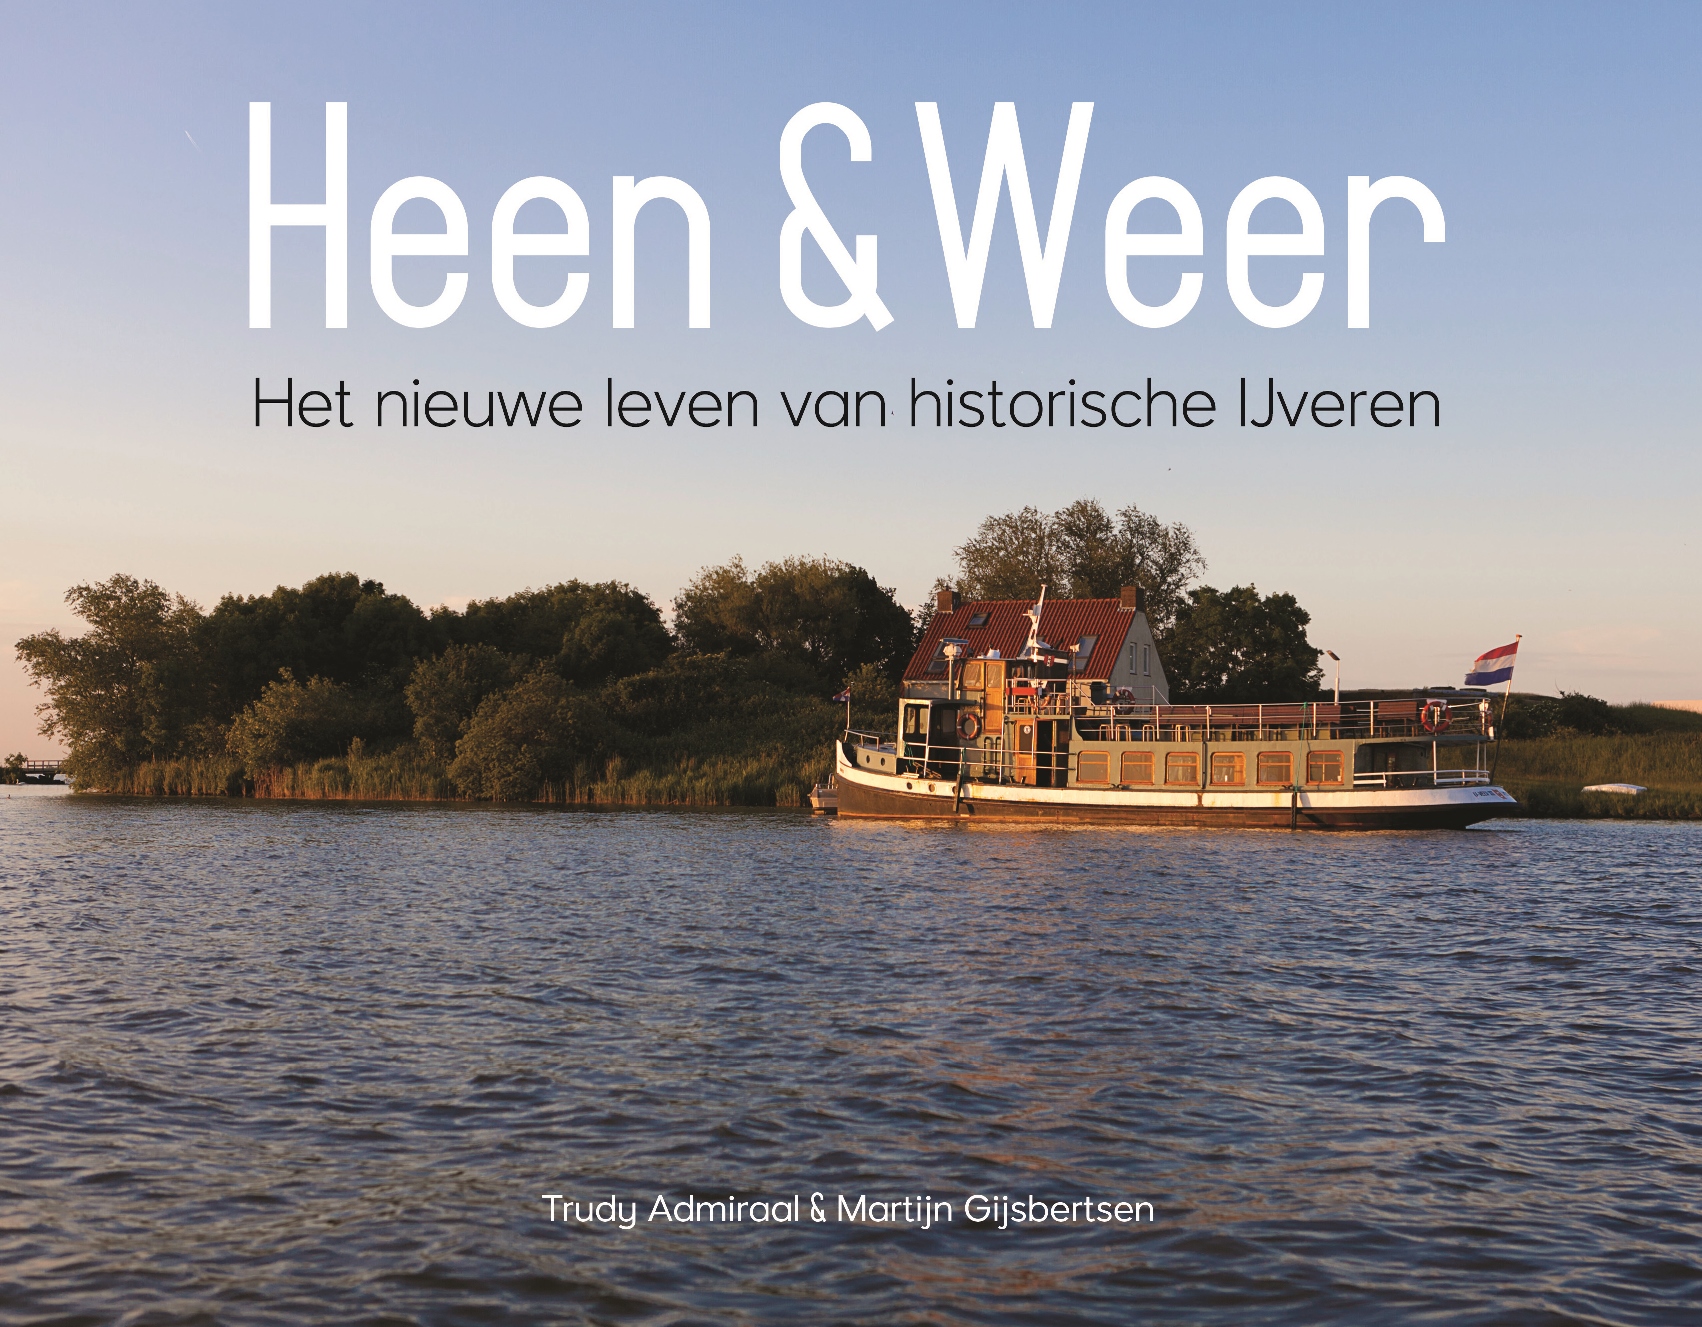 Boek cover, Heen & Weer.